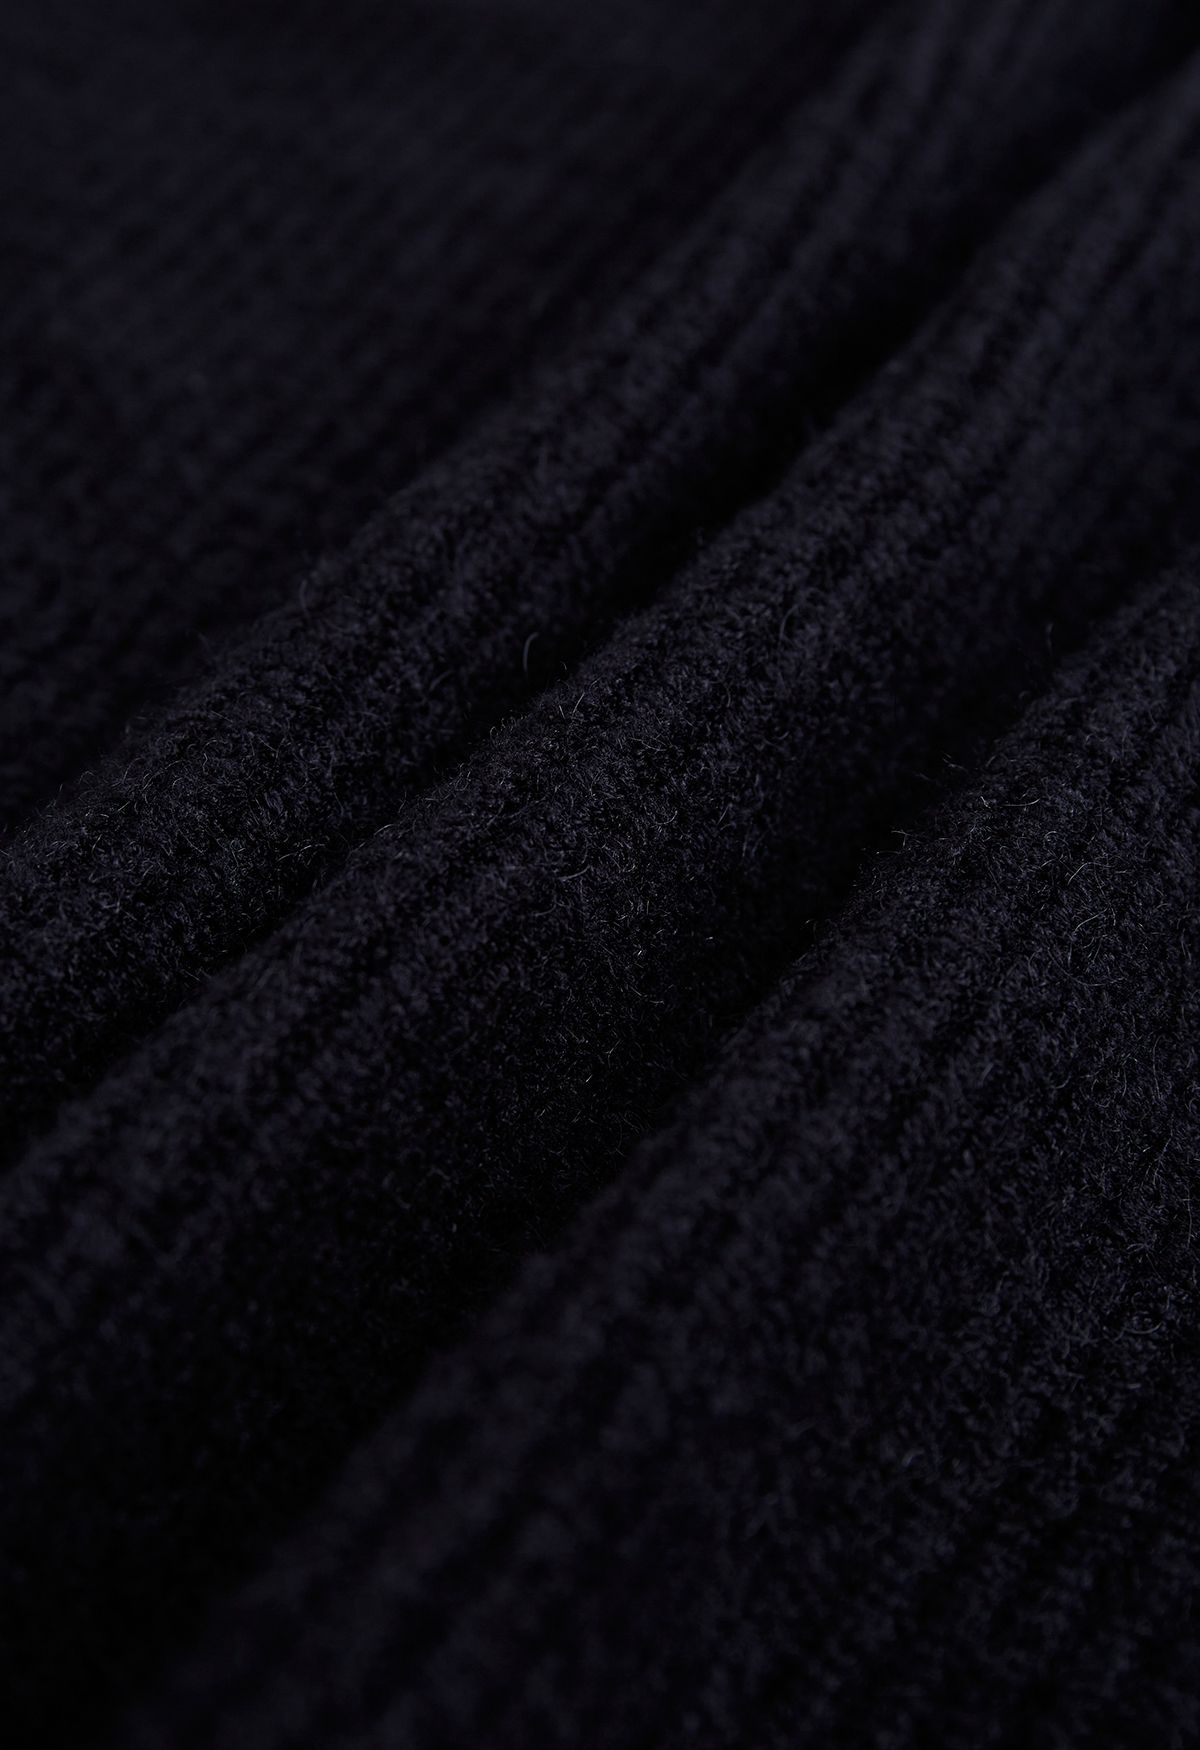 Open Front Longline Knit Cardigan in Black